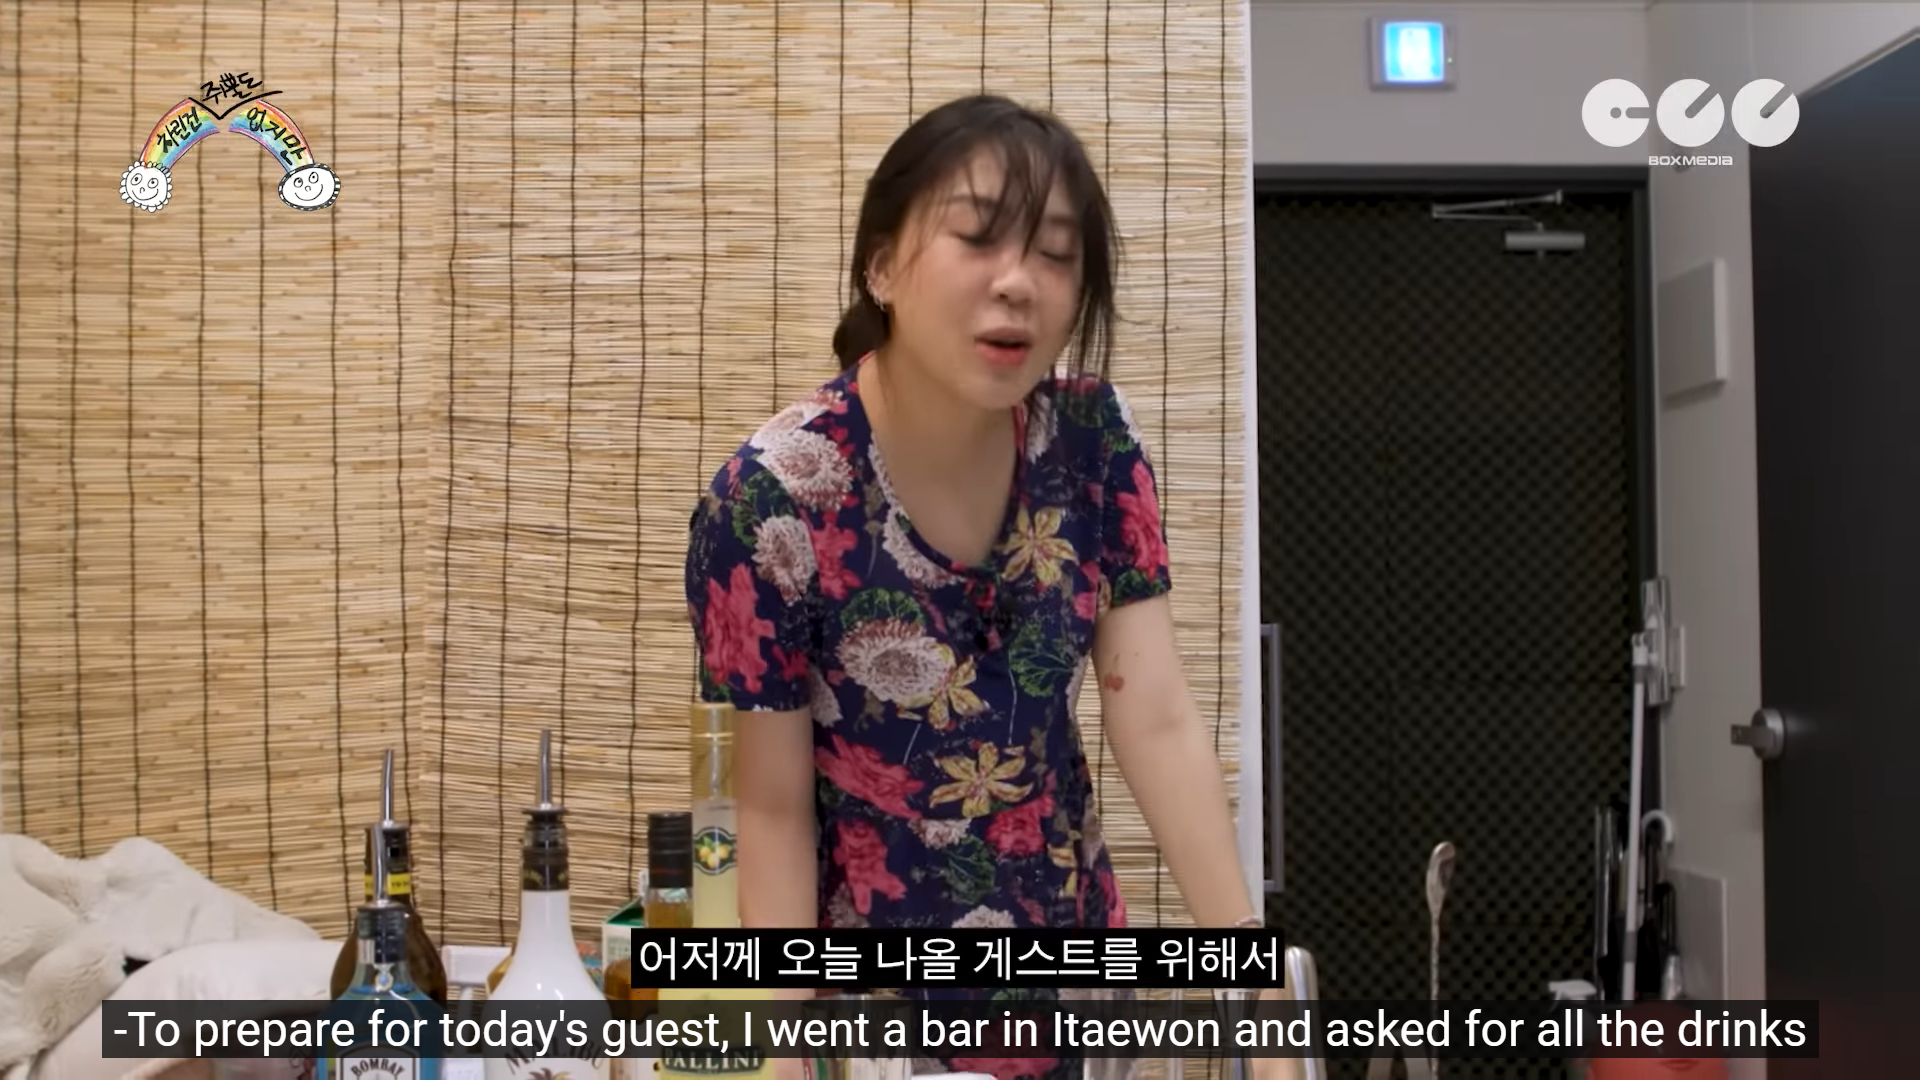 Youngji kể rằng mình đã tới Itaewon hỏi về các loại đồ uống để chuẩn bị cho khách mời